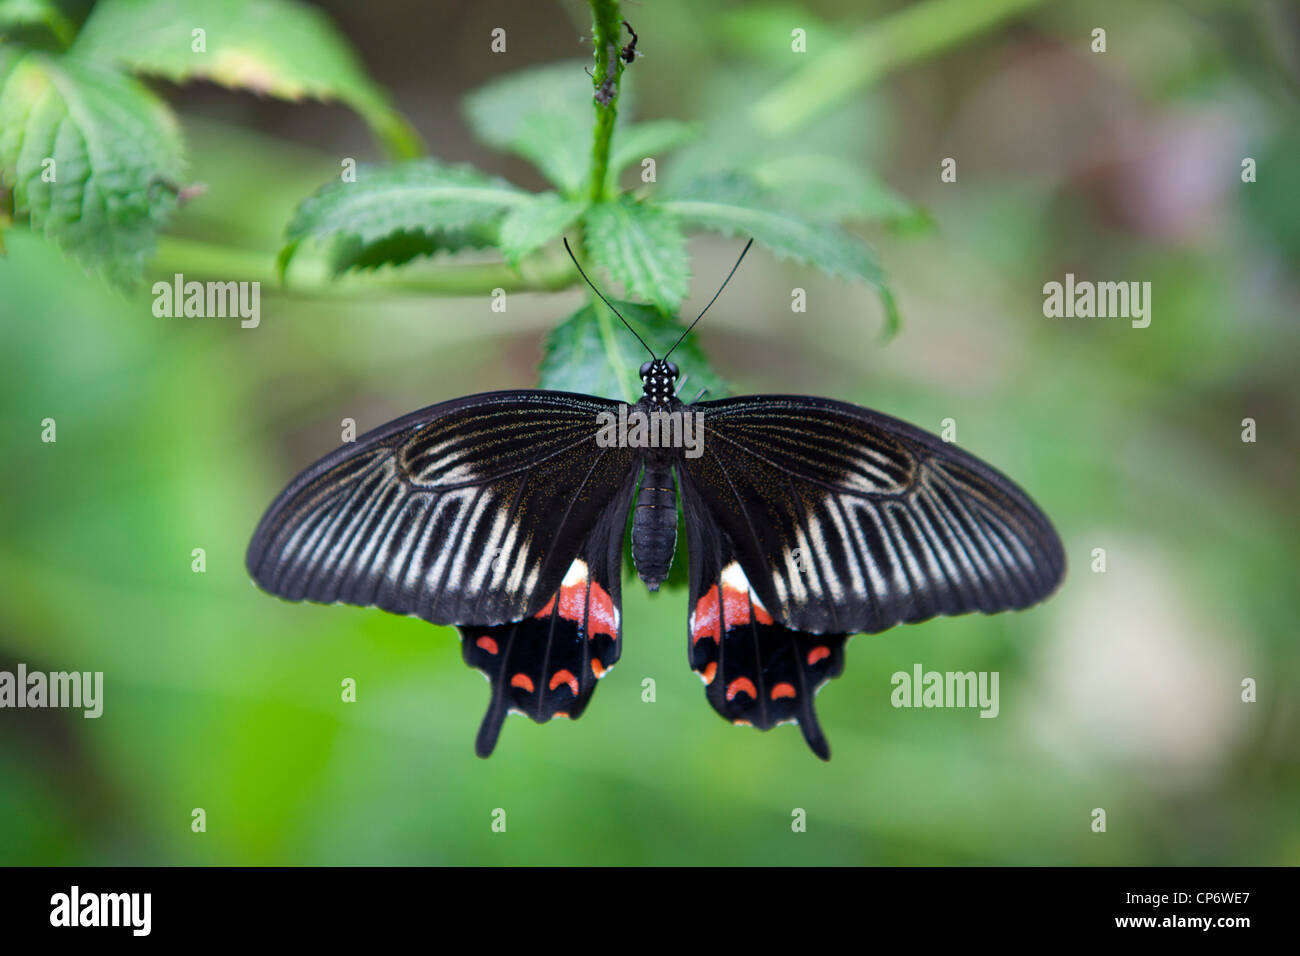 Un papillon noir avec des motifs rouges et blanches sur les ailes, à Butterfly World, Klapmuts, Afrique du Sud Banque D'Images